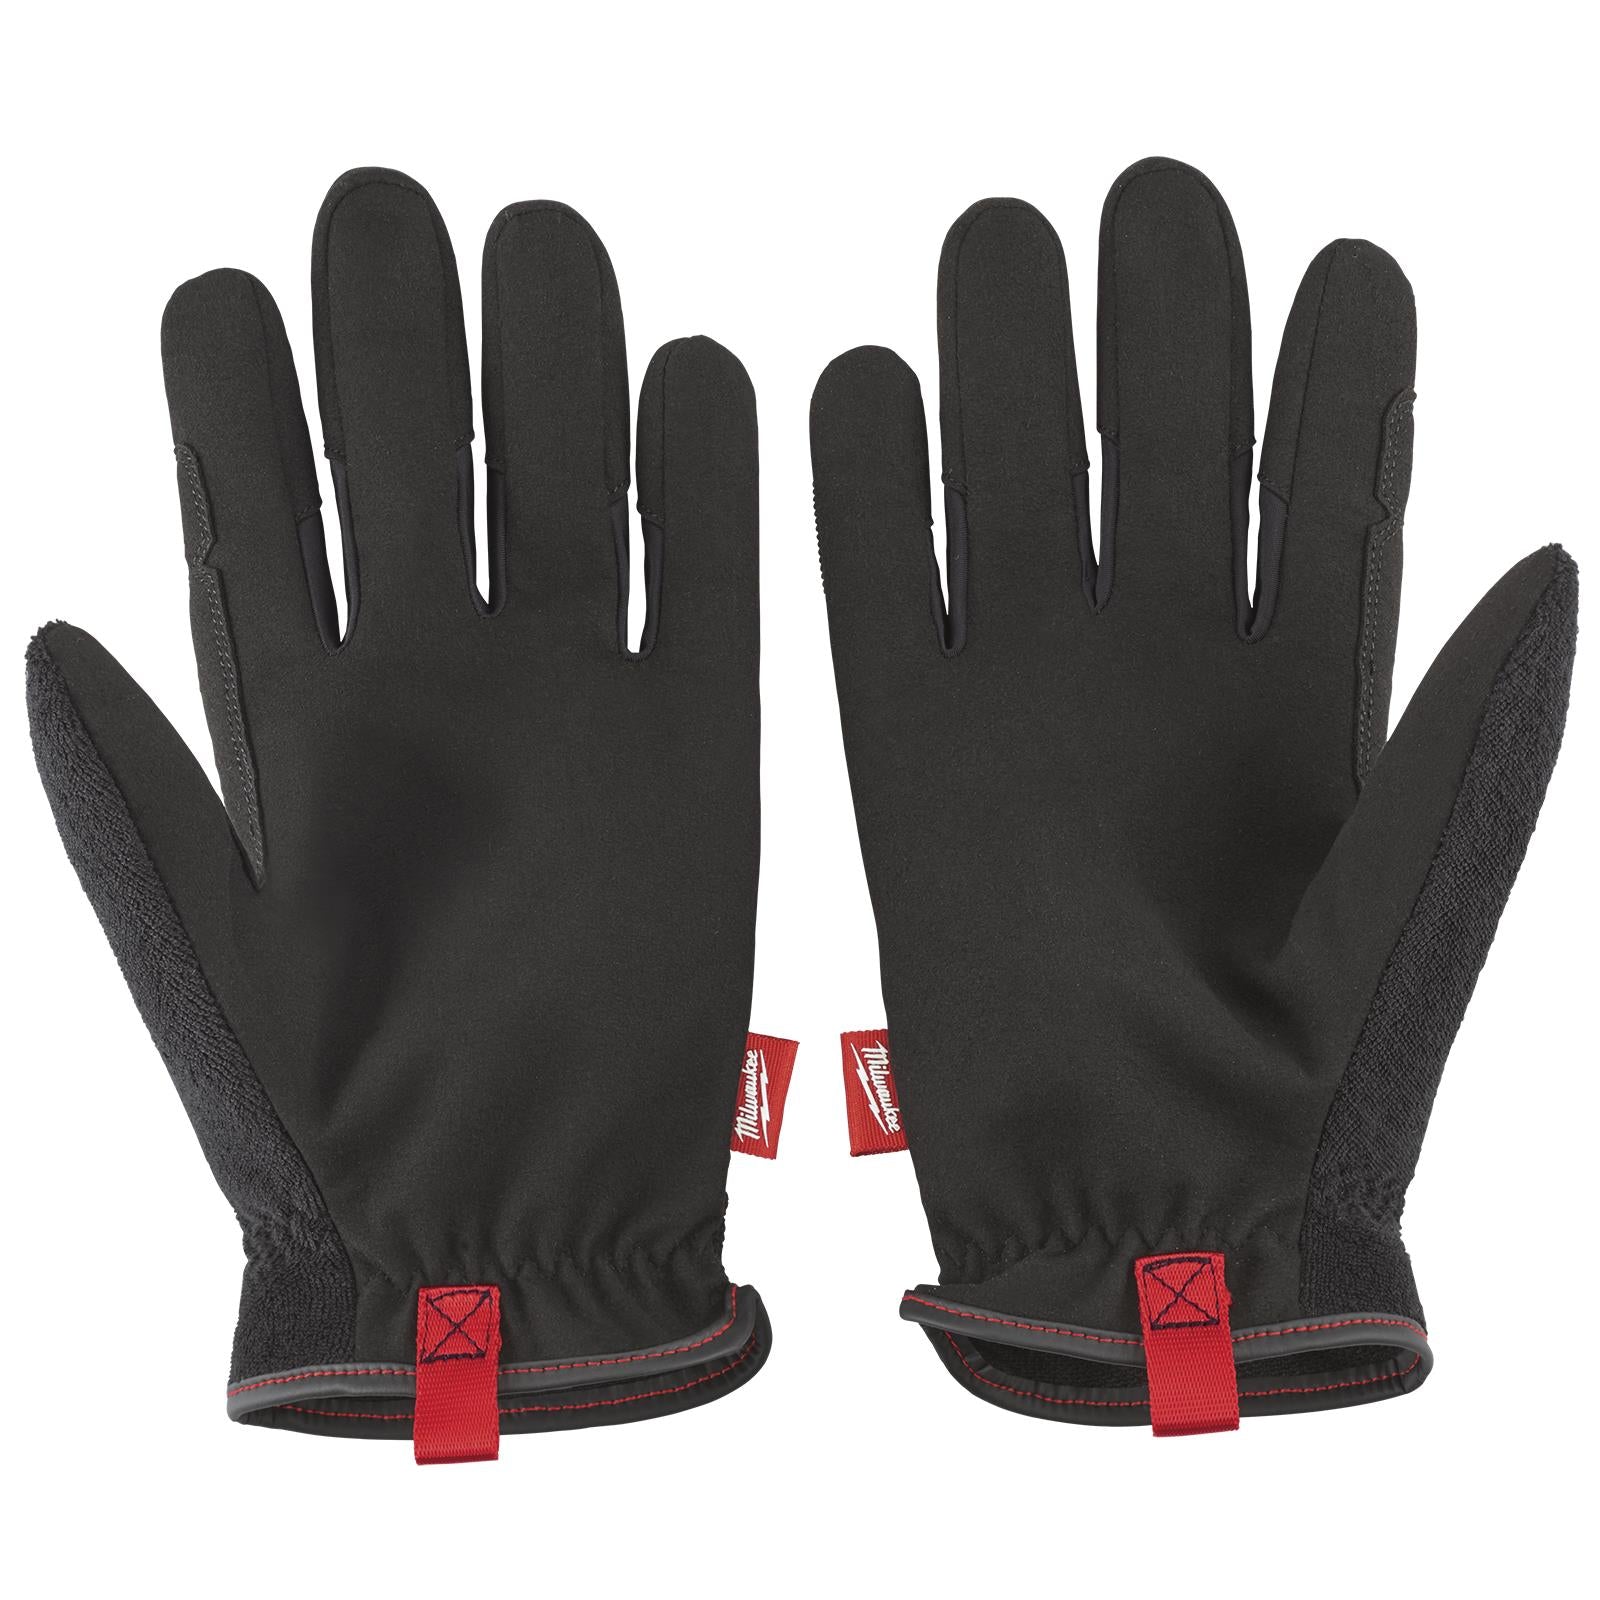 Milwaukee Safety Gloves Free Flex Work Glove Size M Medium